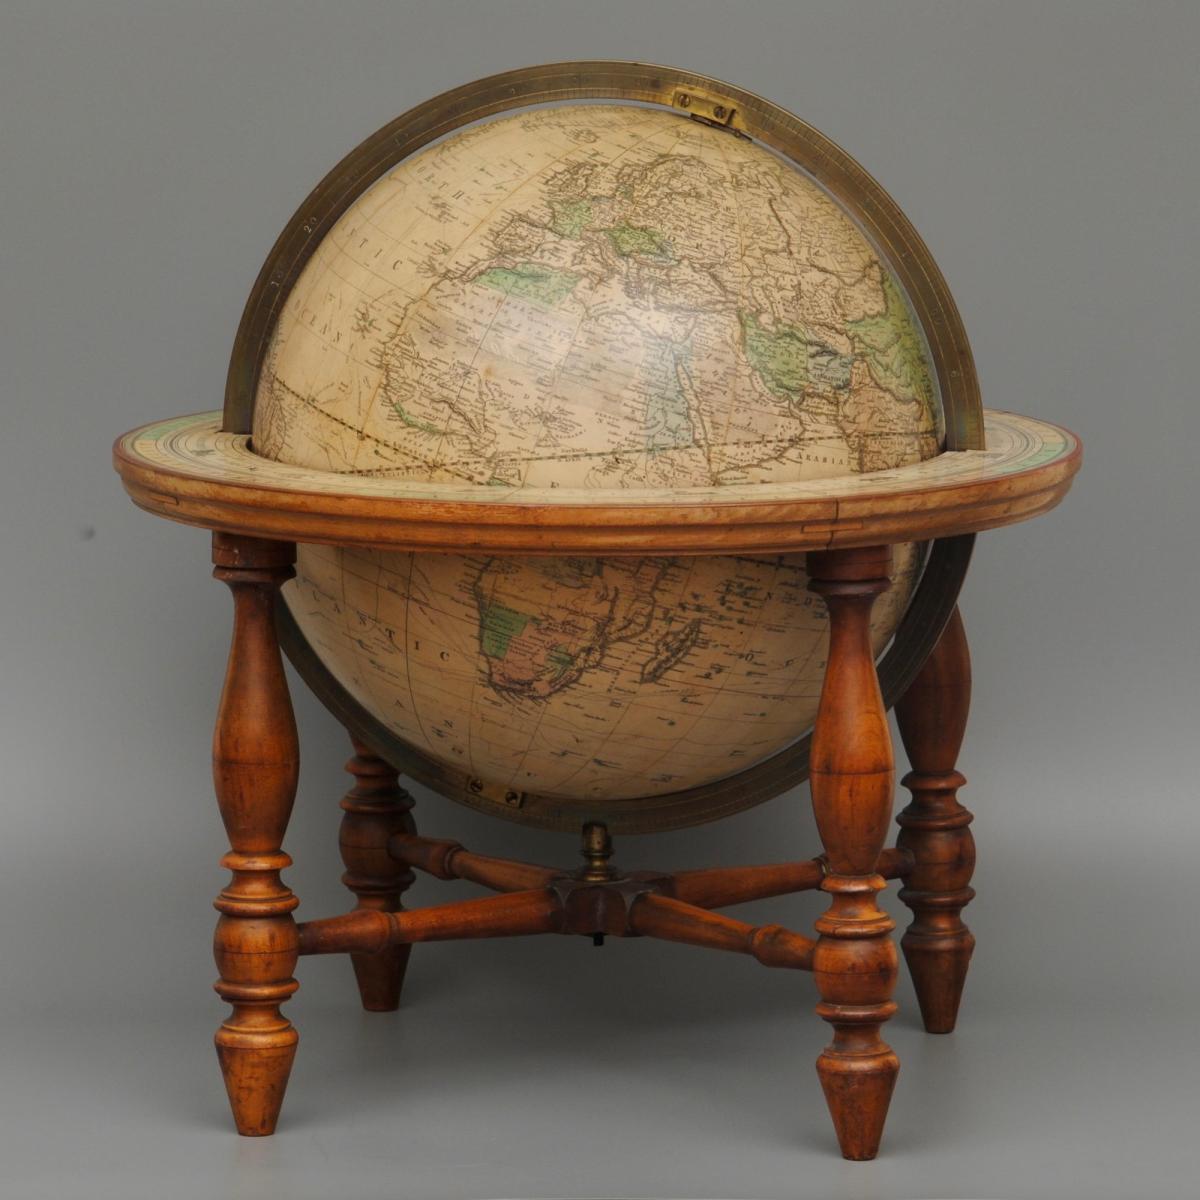 An American 12" Terrestrial Globe by Joslin